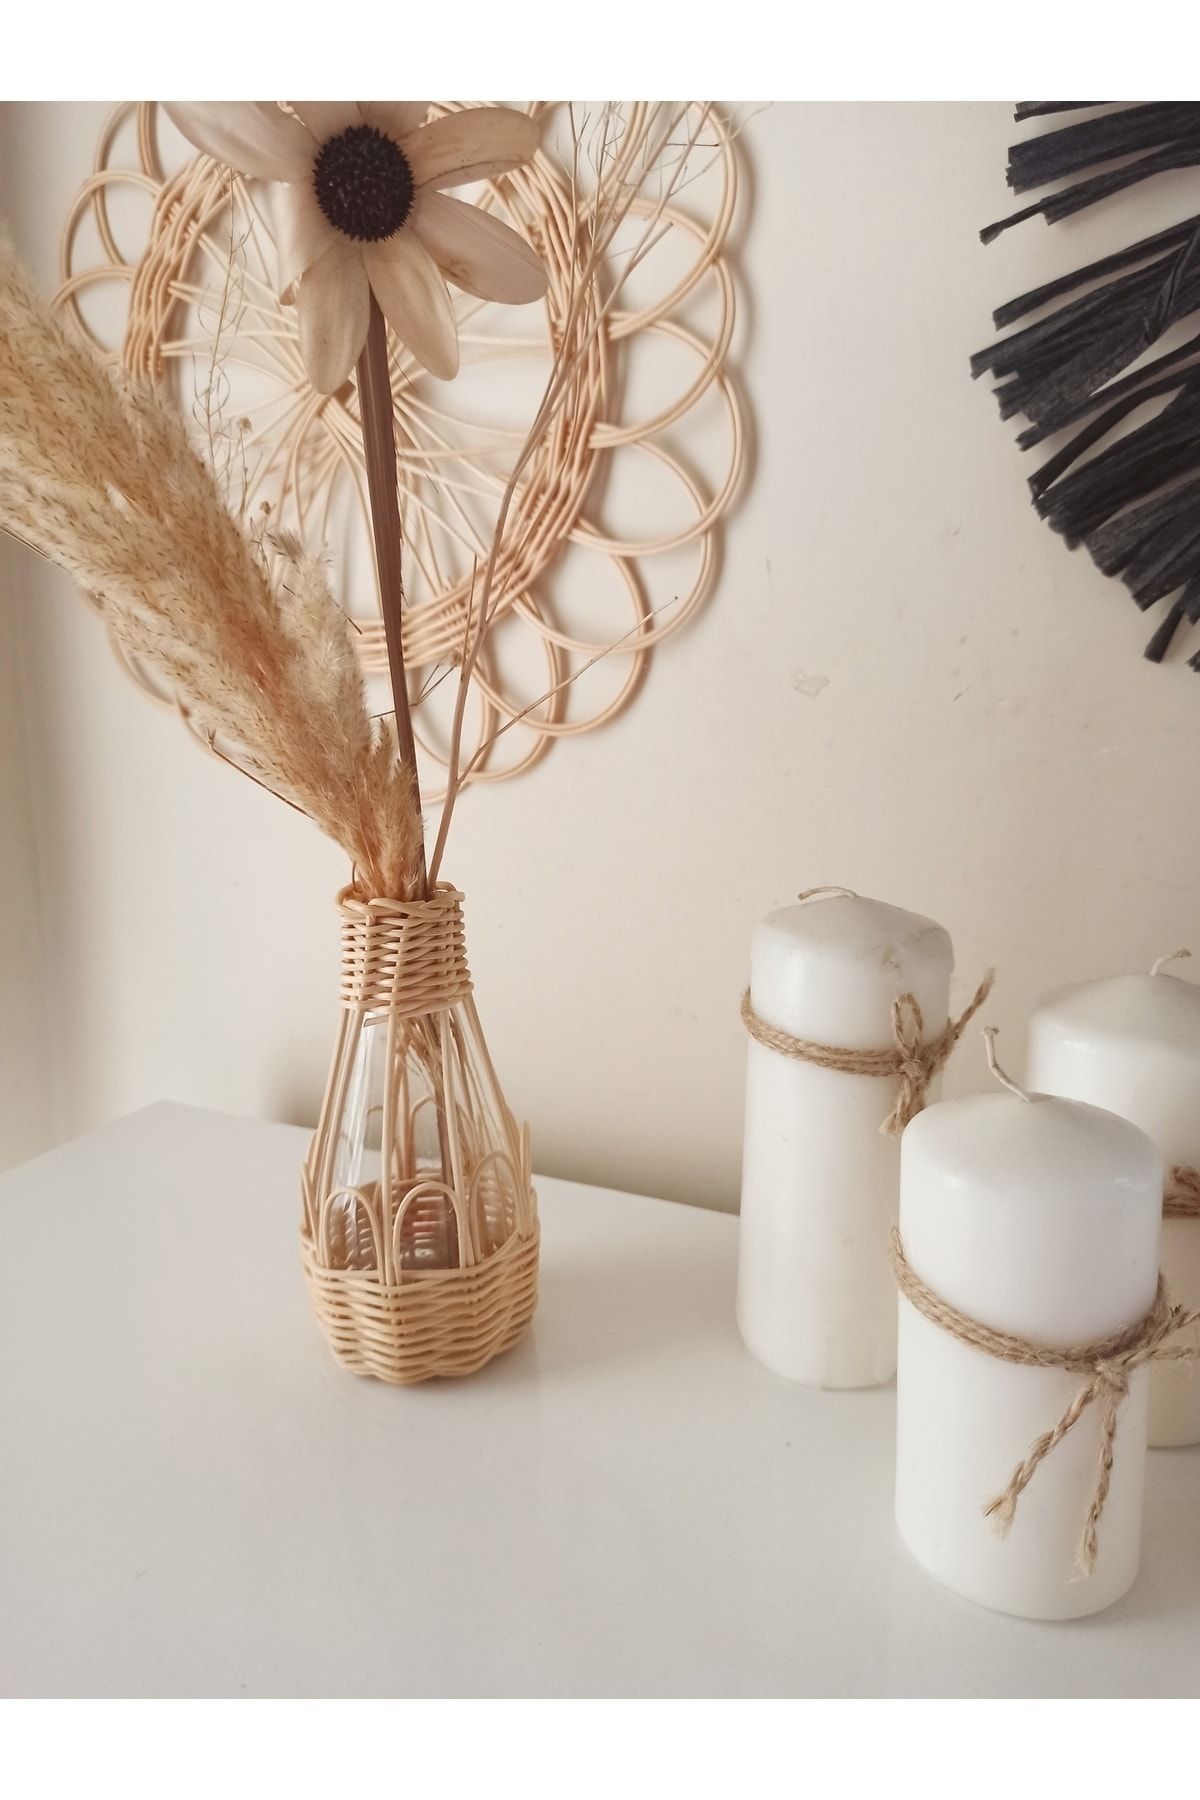 gudelidekor hasır bambu rattan dekoratif vazo 15 cm